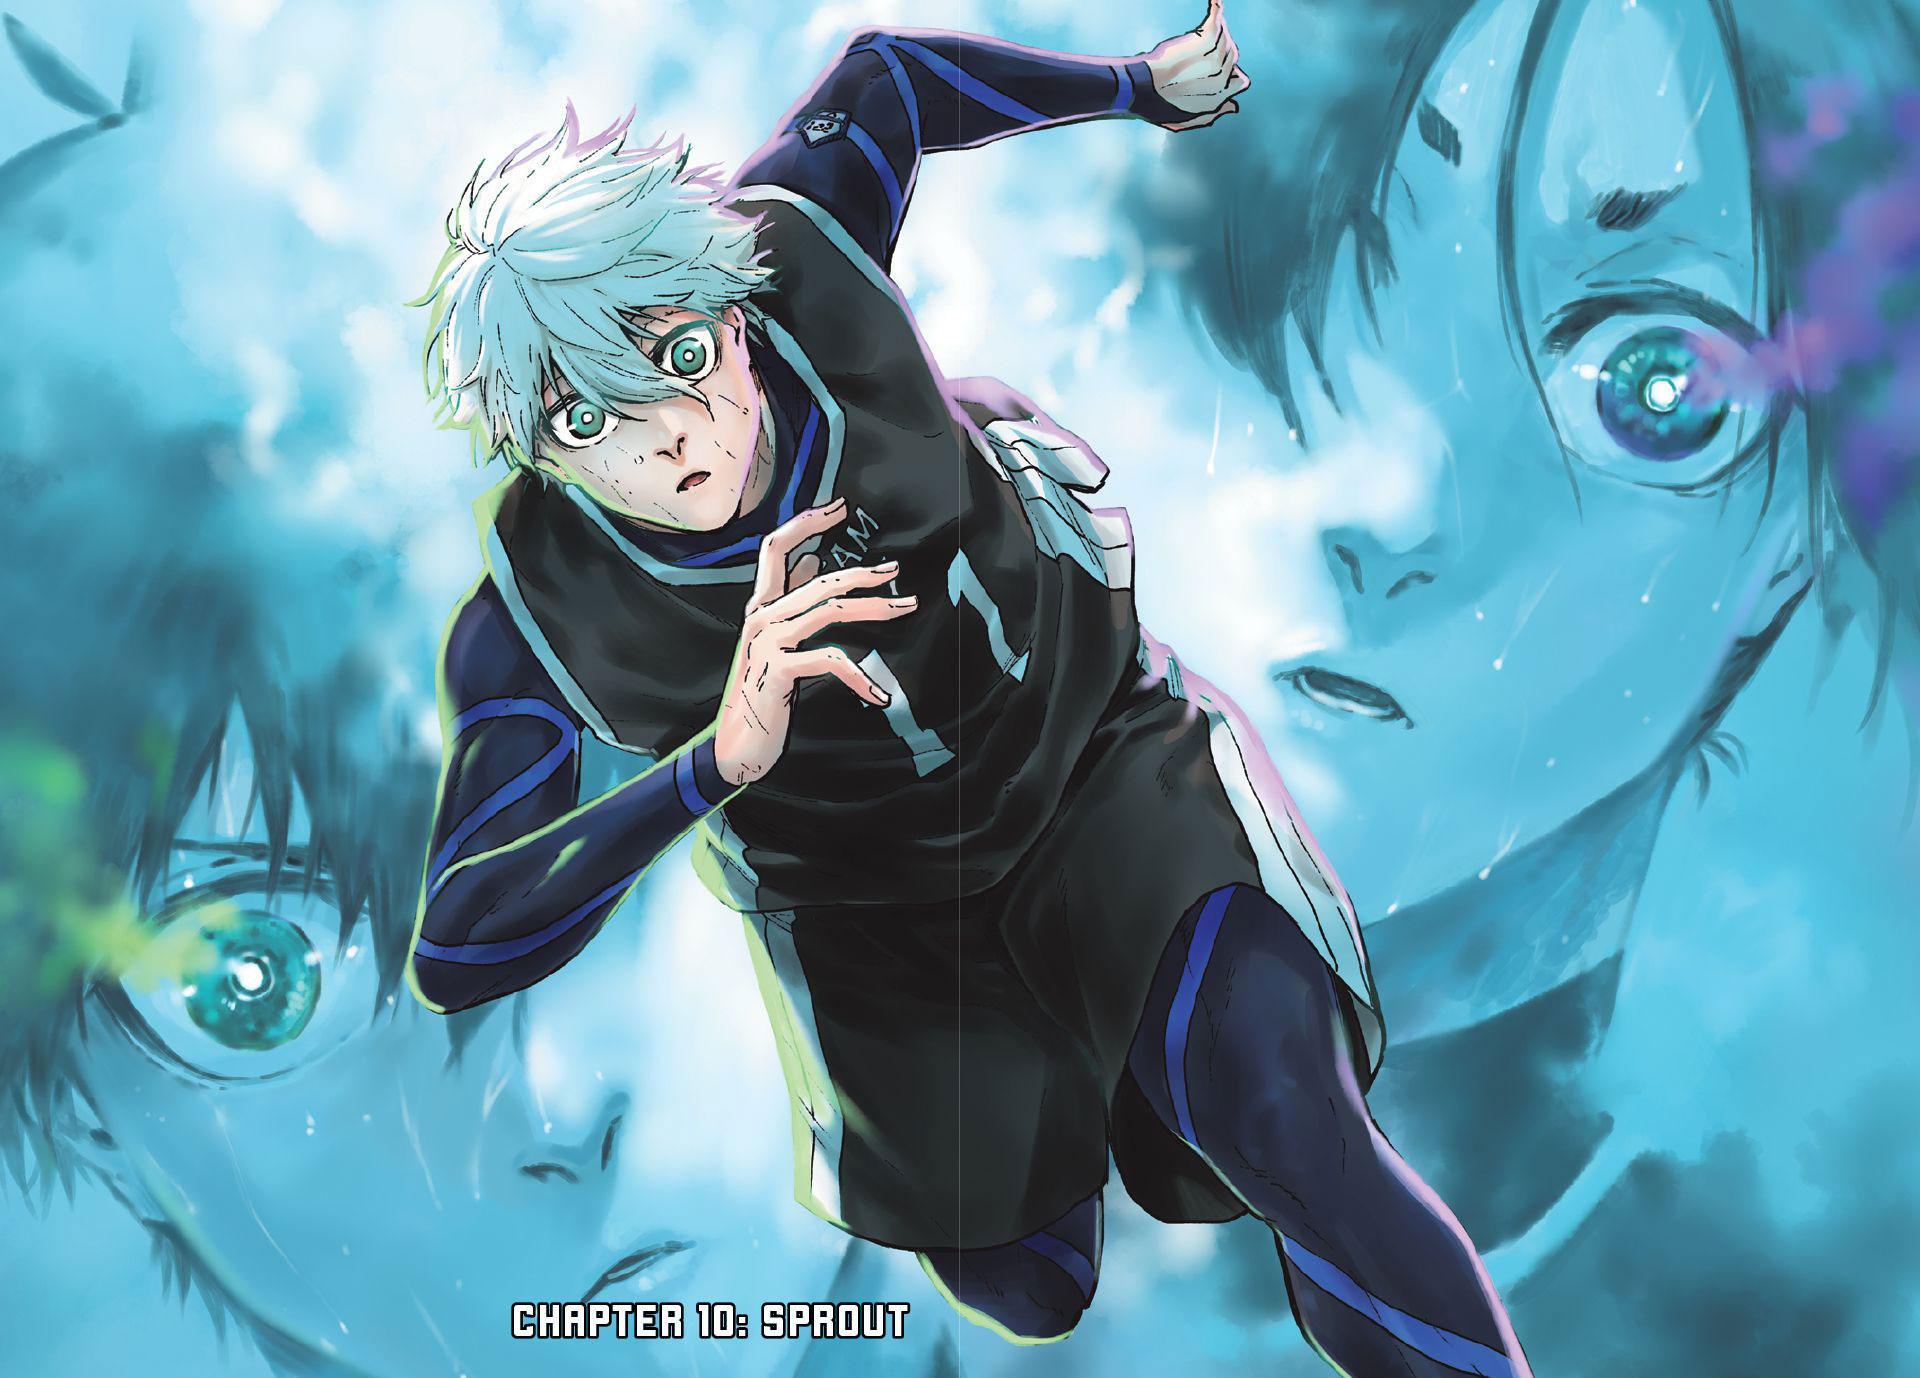 Read Blue Lock: Episode Nagi Chapter 13 - Manganelo